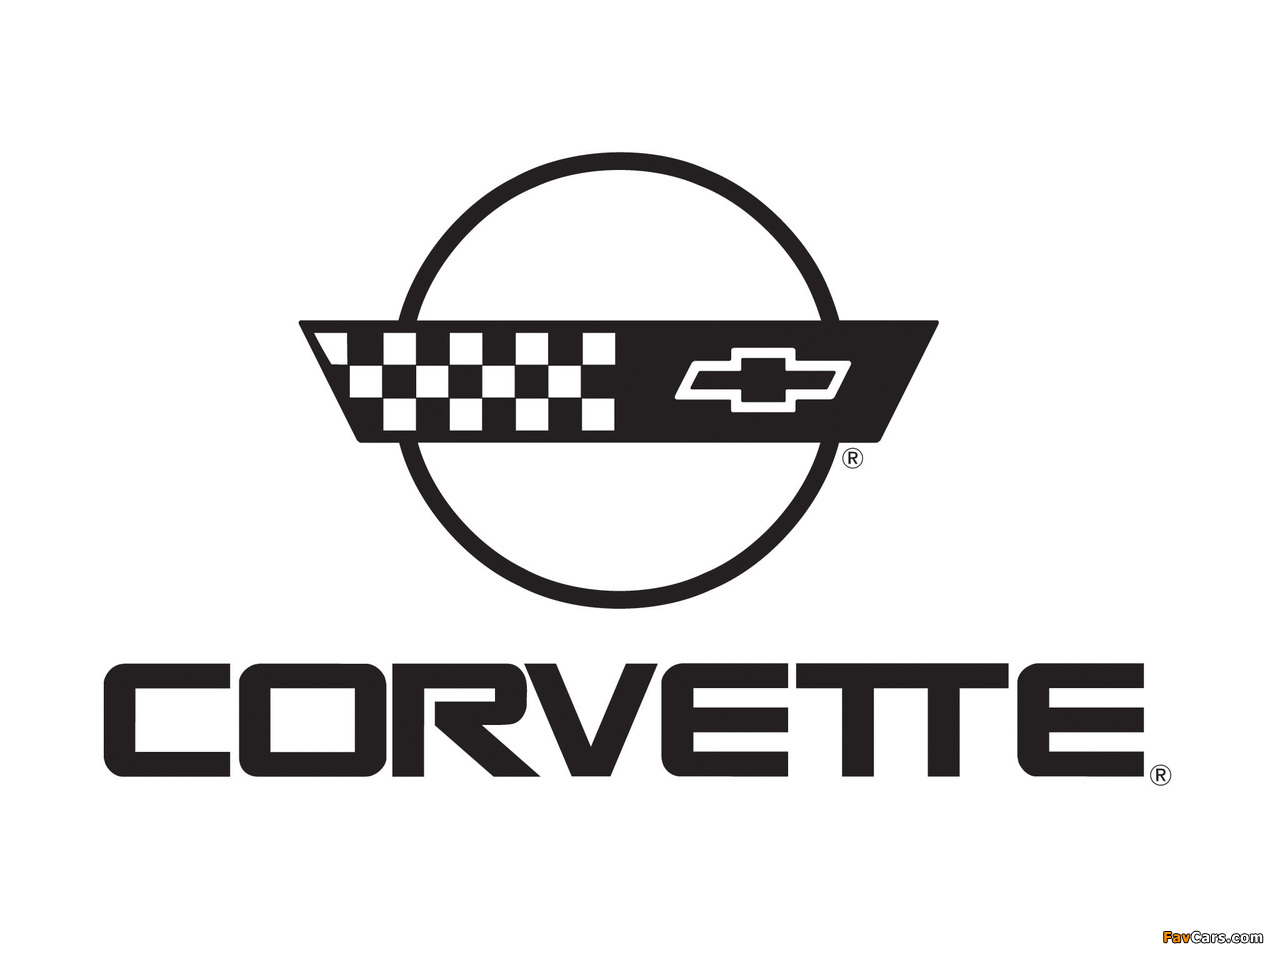 Corvette images (1280 x 960)